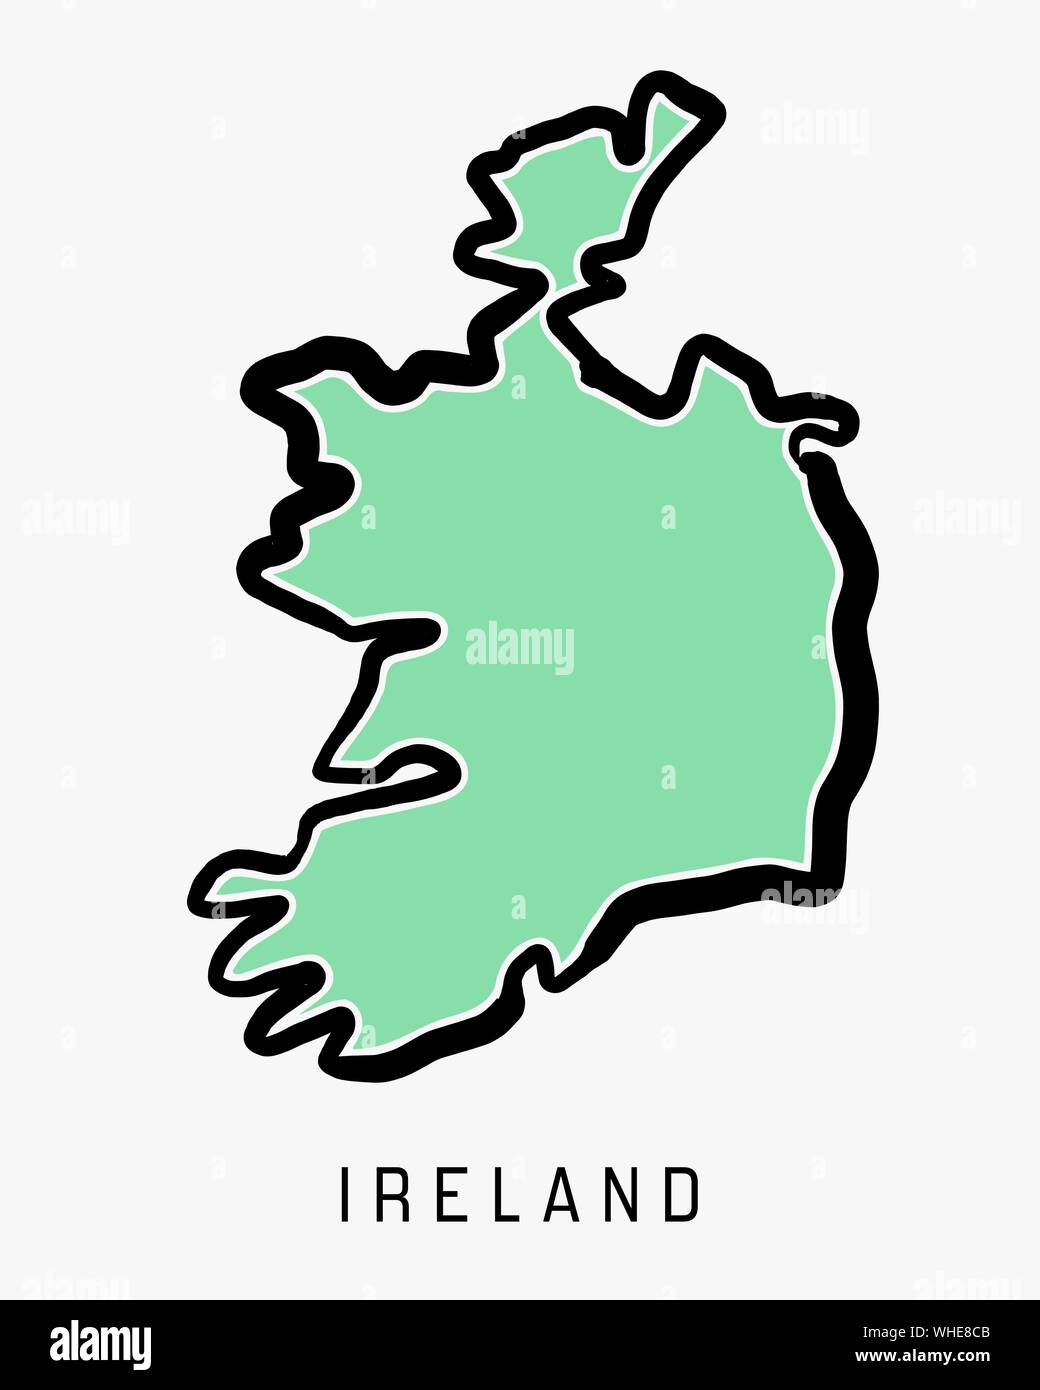 Irland einfache Karte Umriss - vereinfachte Land formen Karte Vektor. Stock Vektor